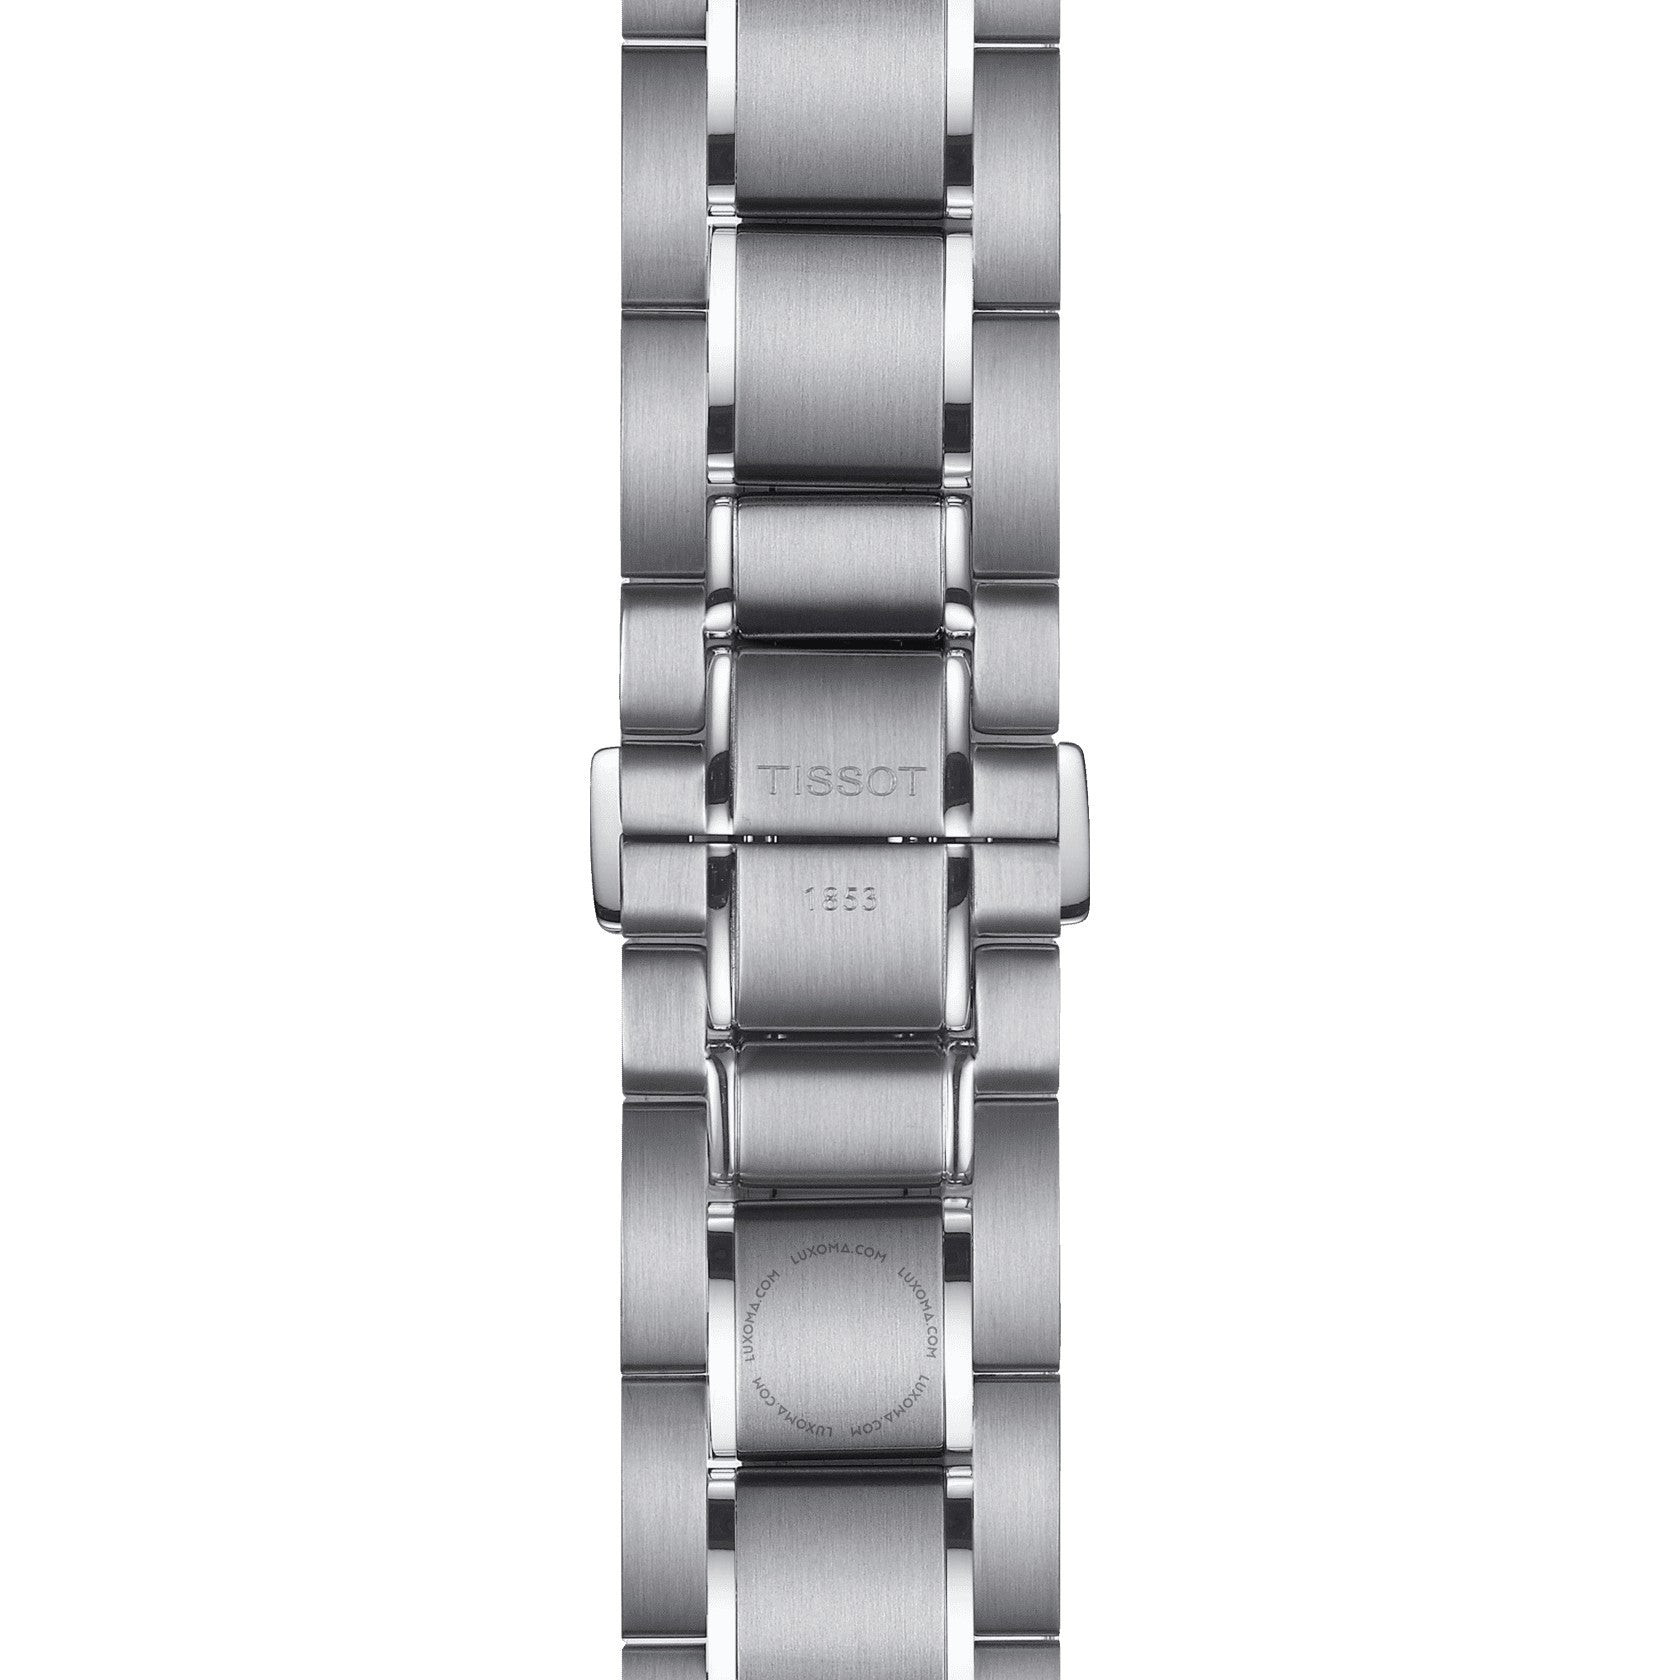 Tissot Tissot PRS 516 Chronograph Silver Dial Men's Watch T100.417.11.031.00